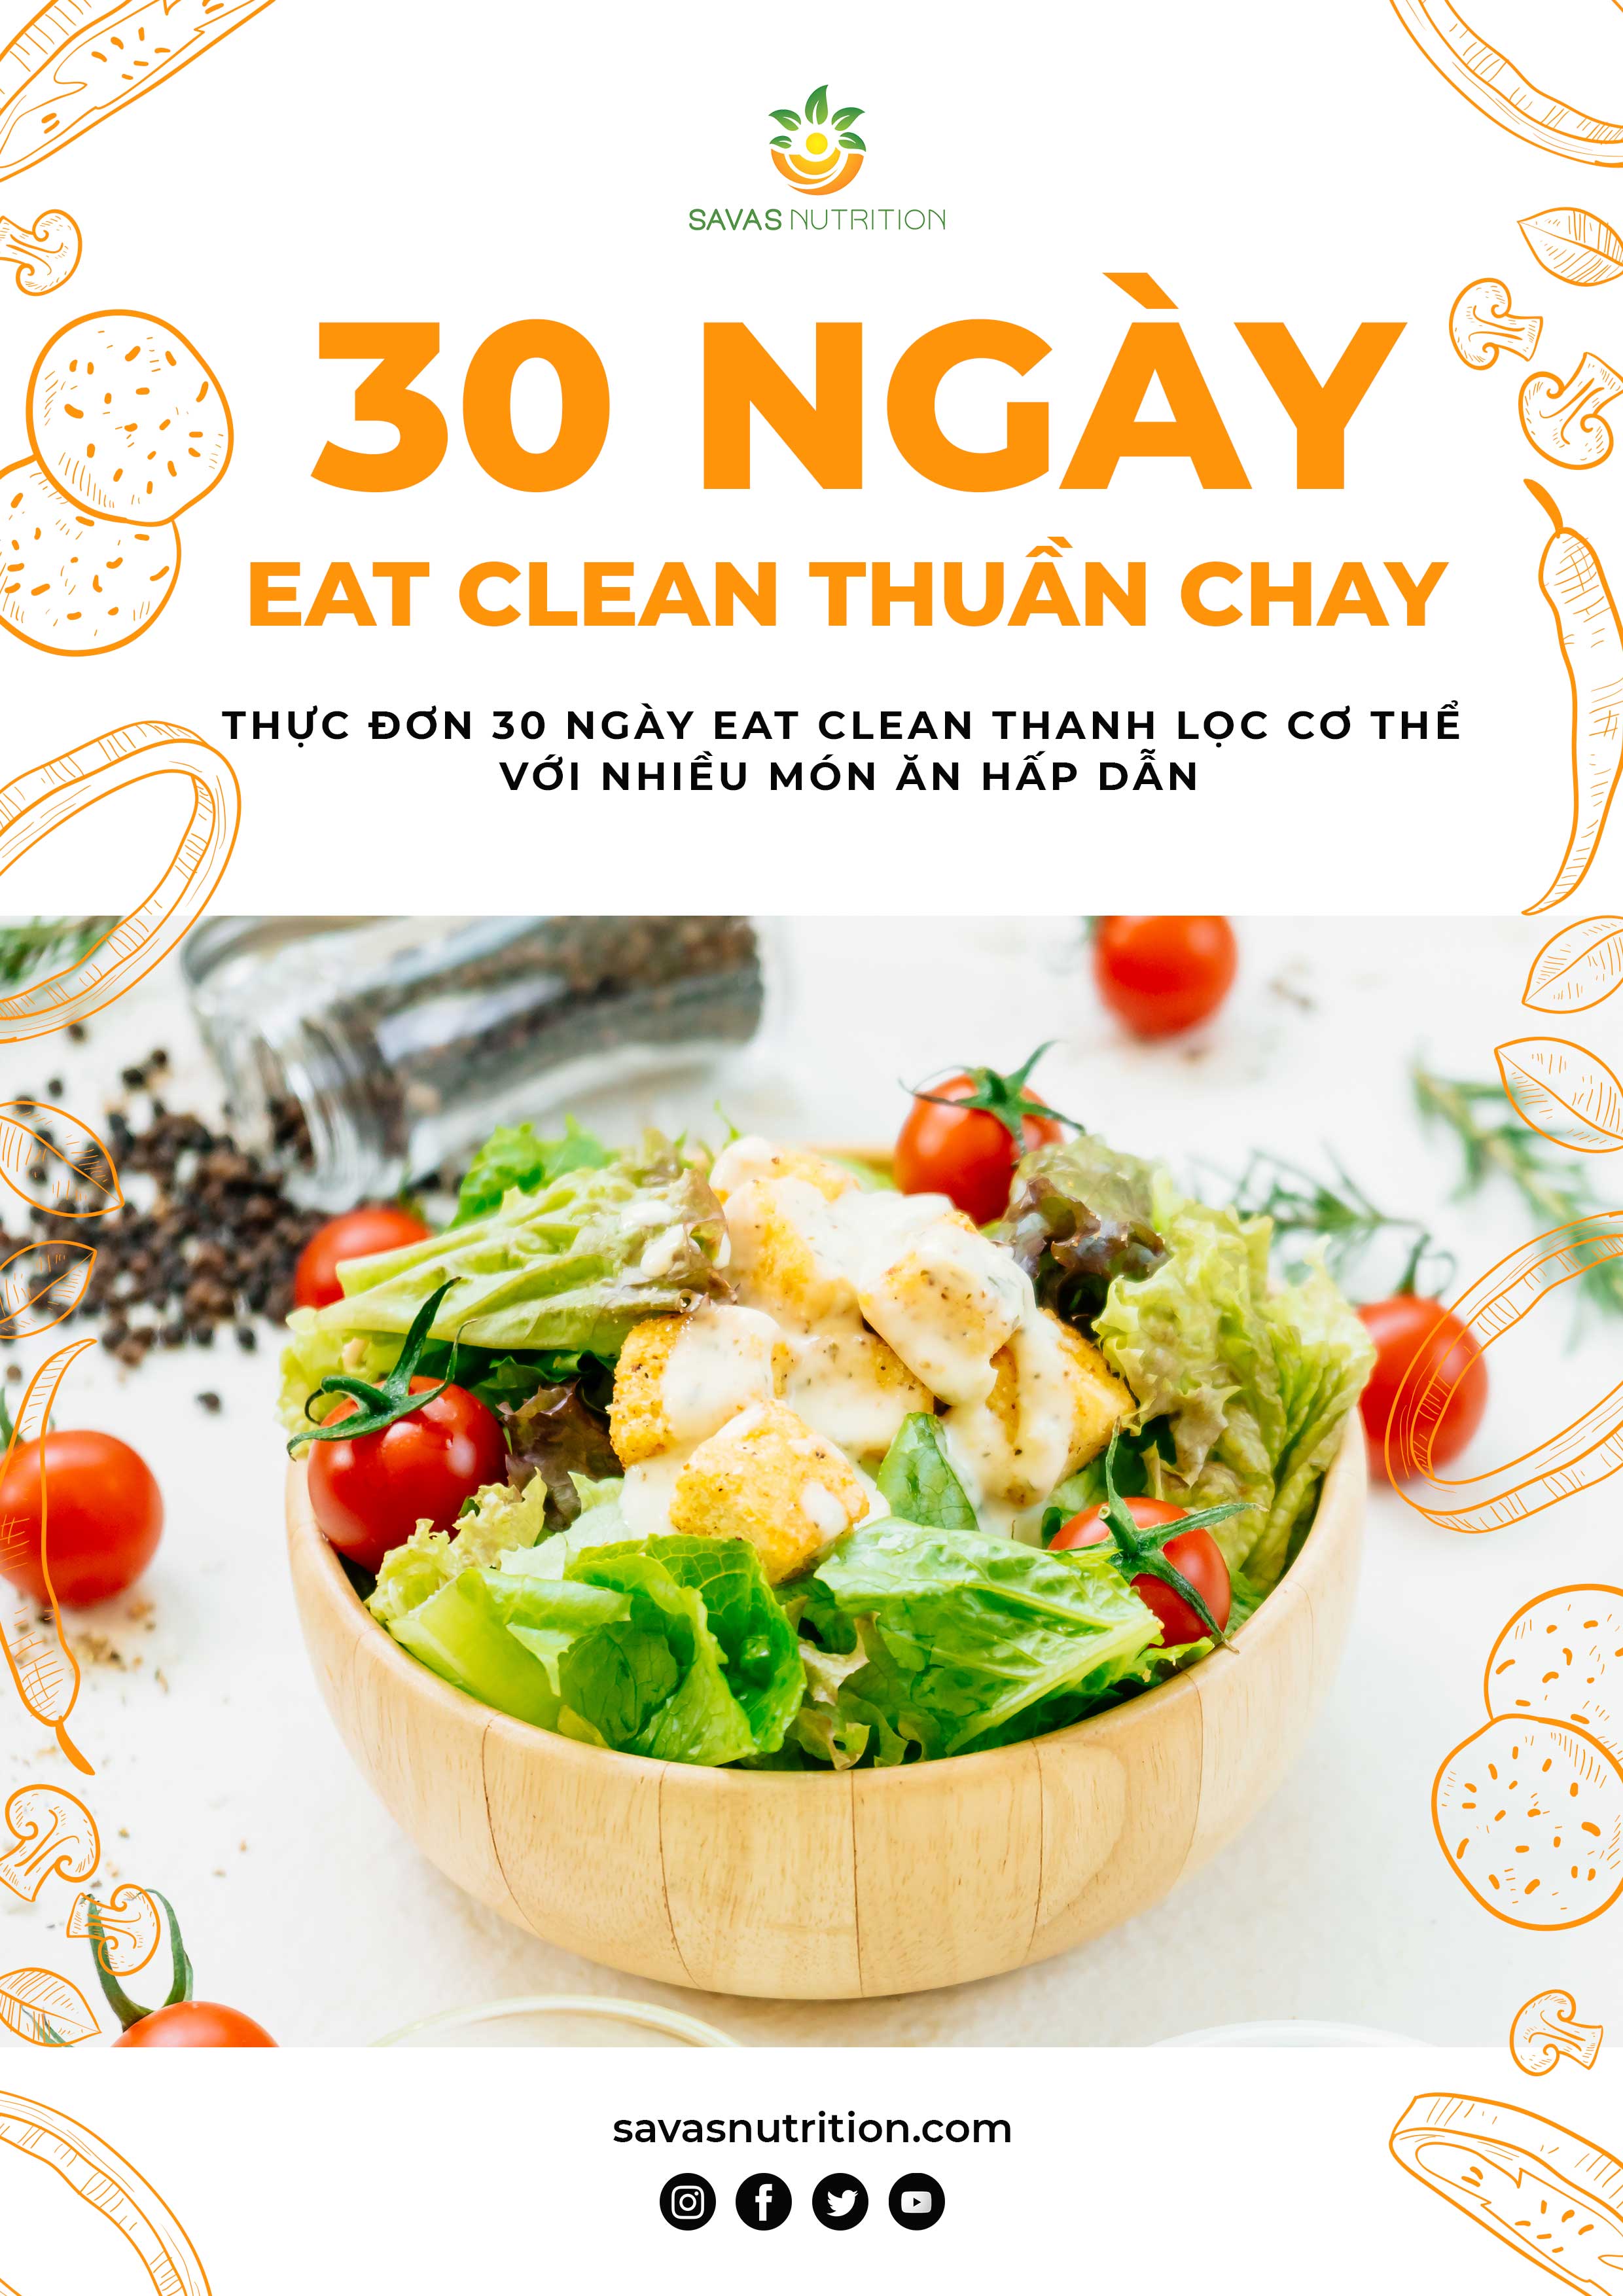 thực đơn eat clean 30 ngày thuần chay